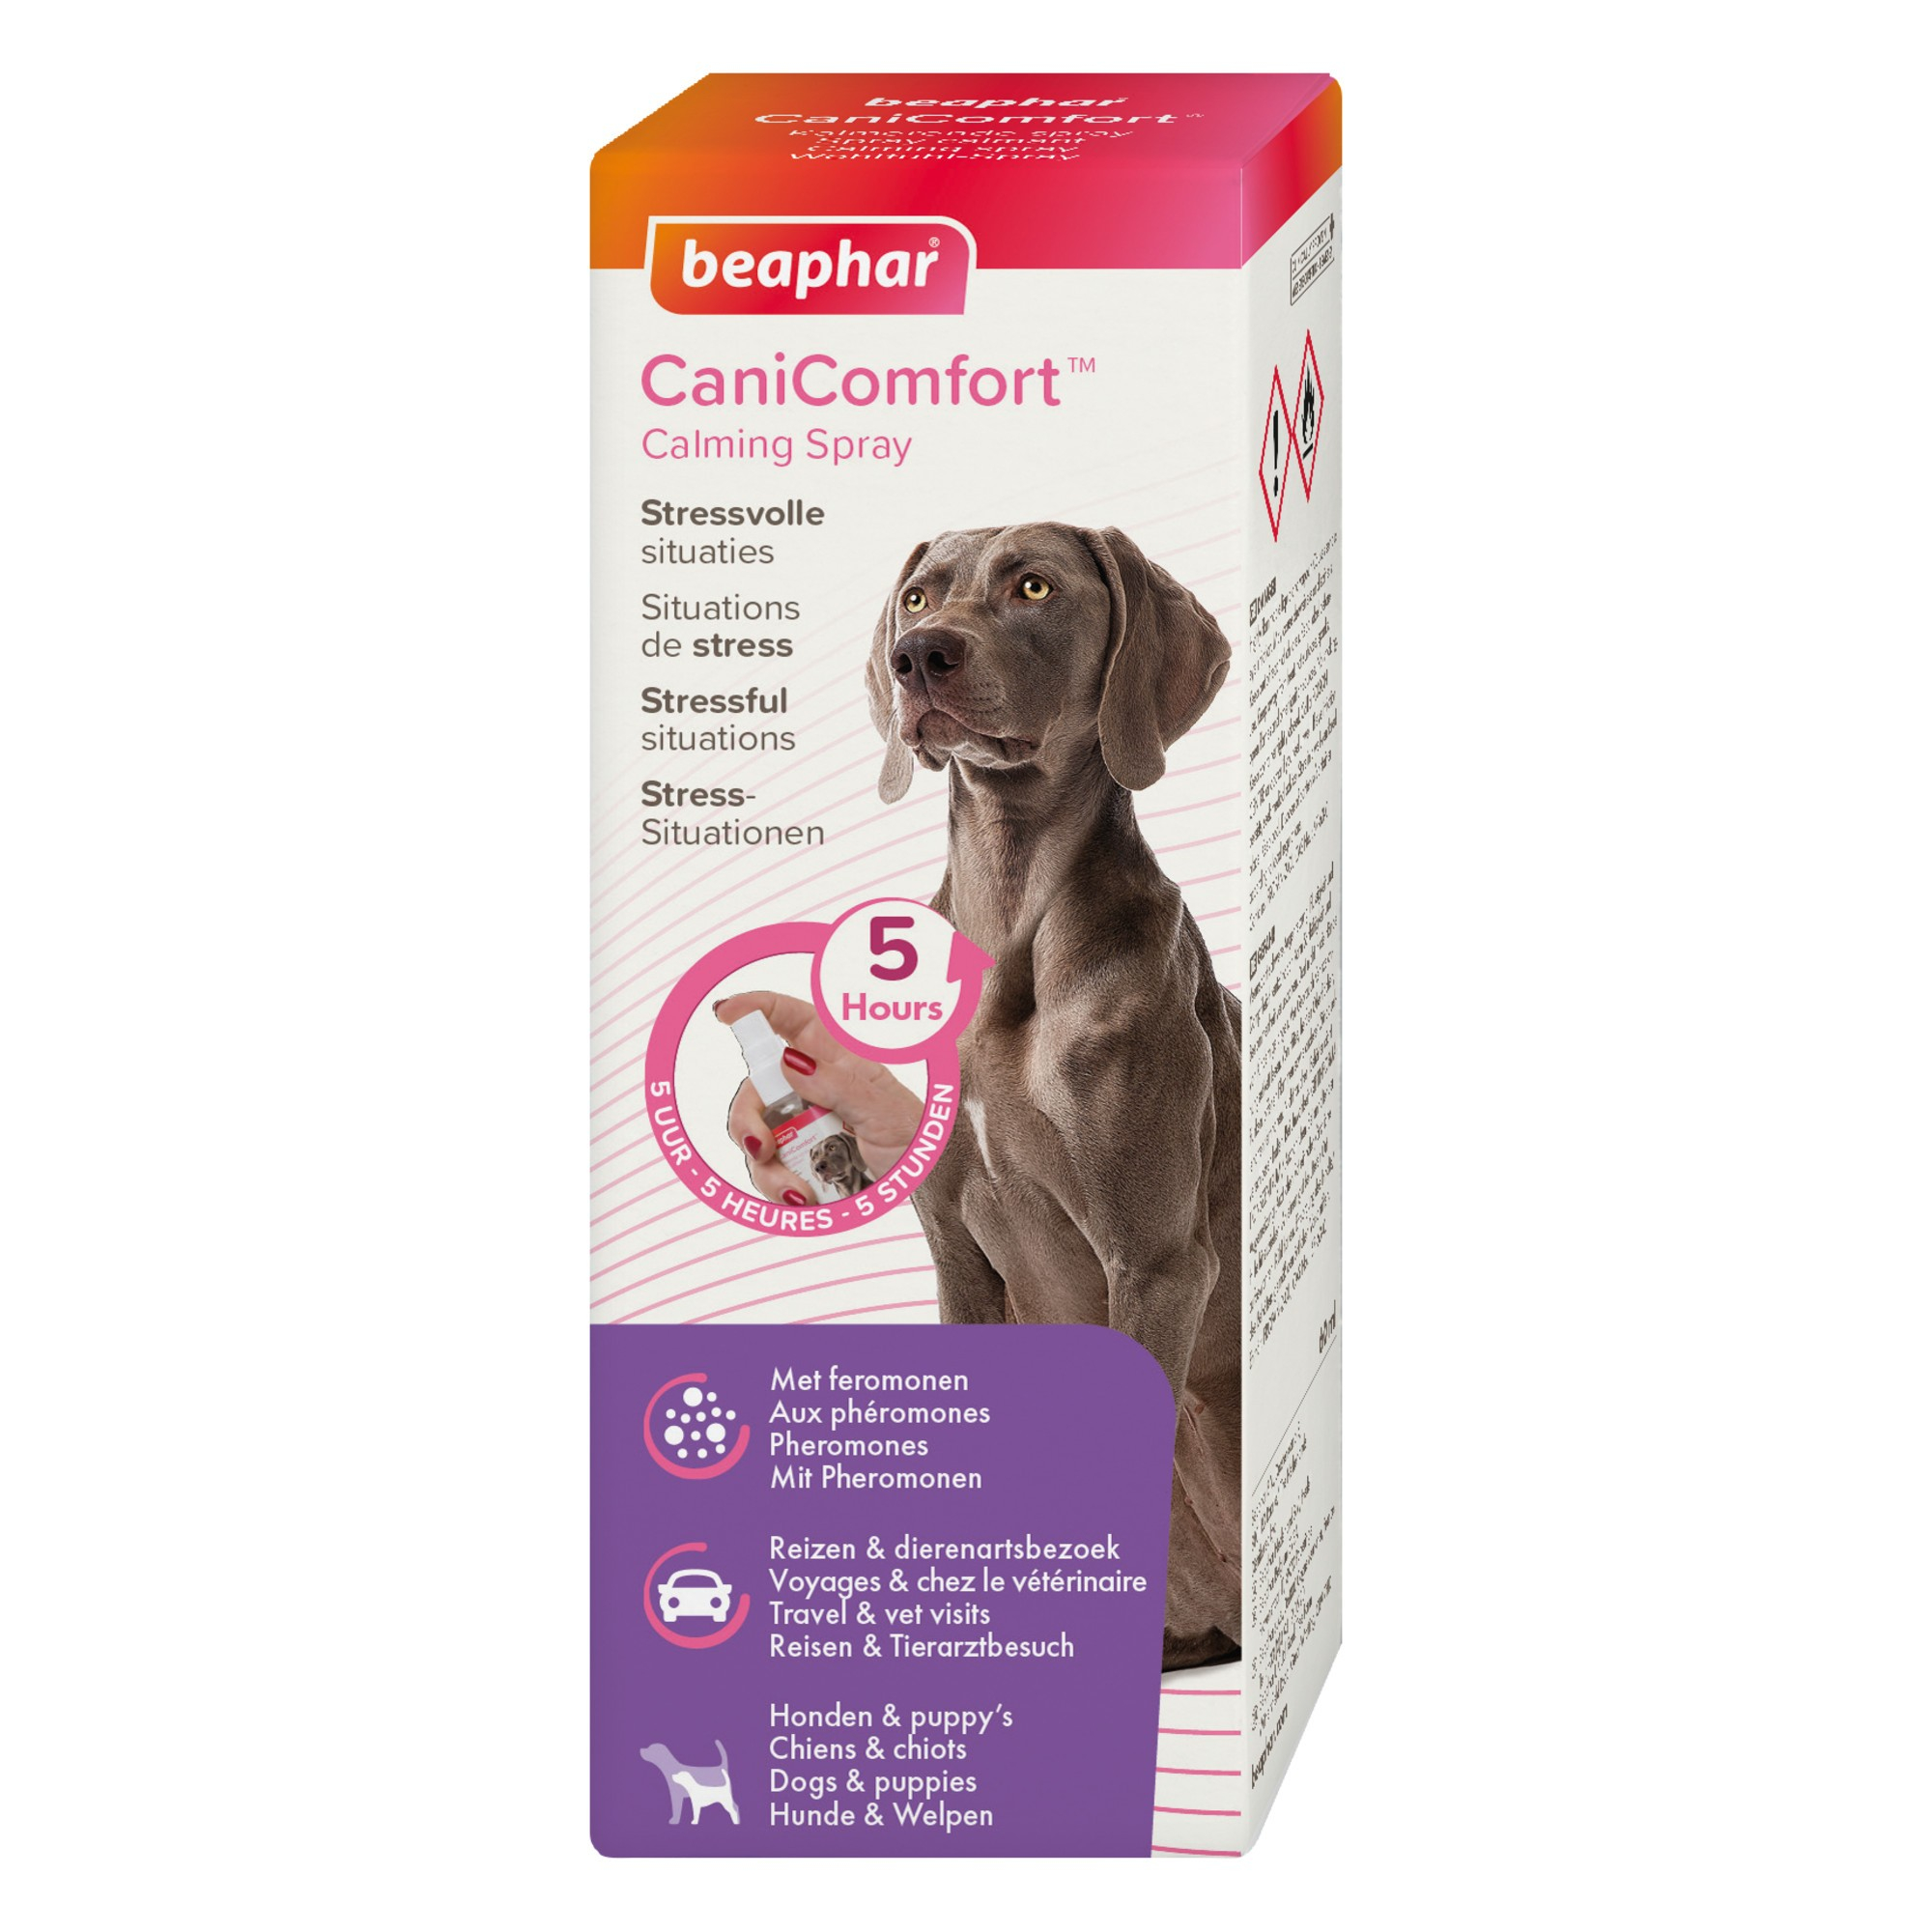 CaniComfort Spray calmante con feromonas para perros y cachorros